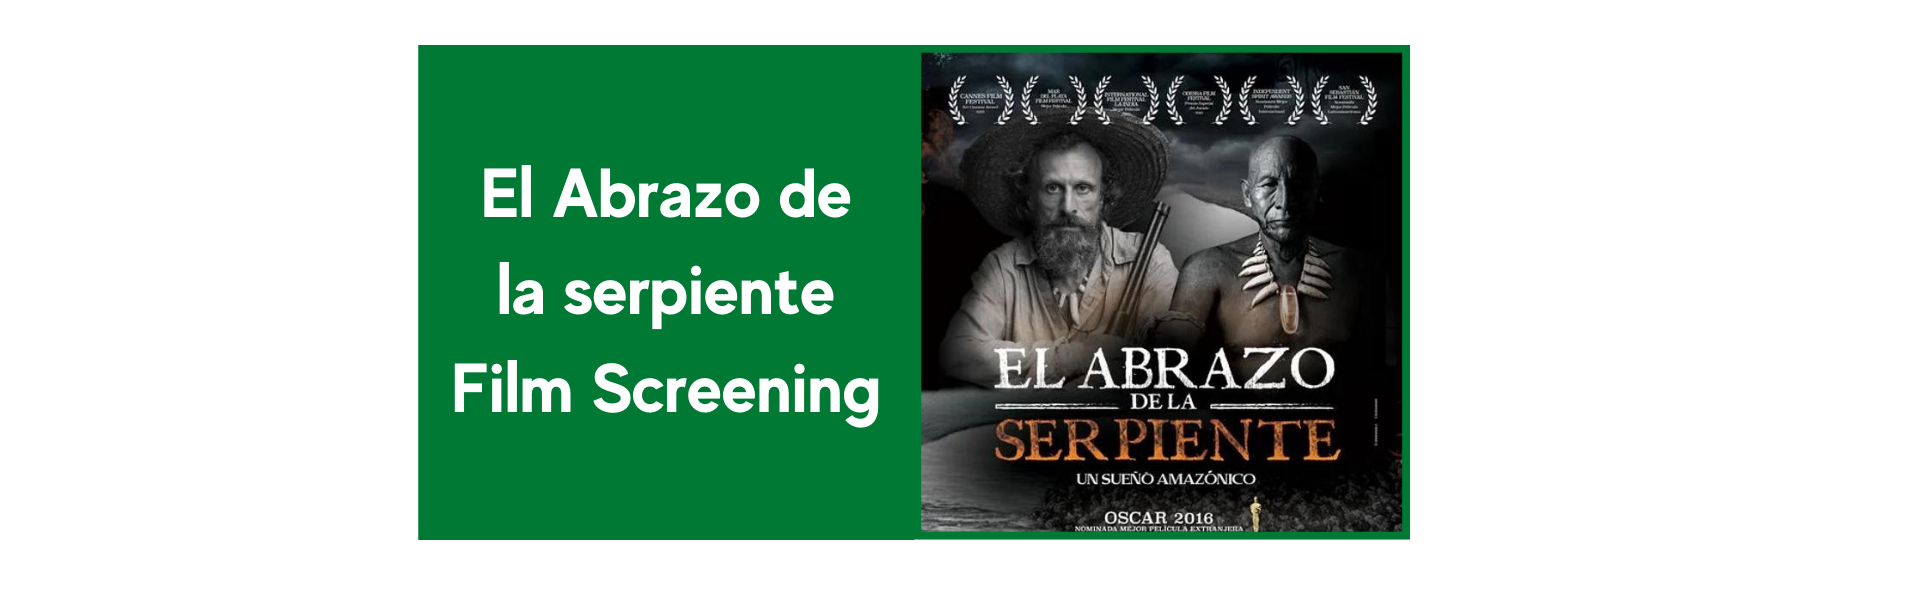 El-Abrazo-de-la-serpiente-Film-Screening.png